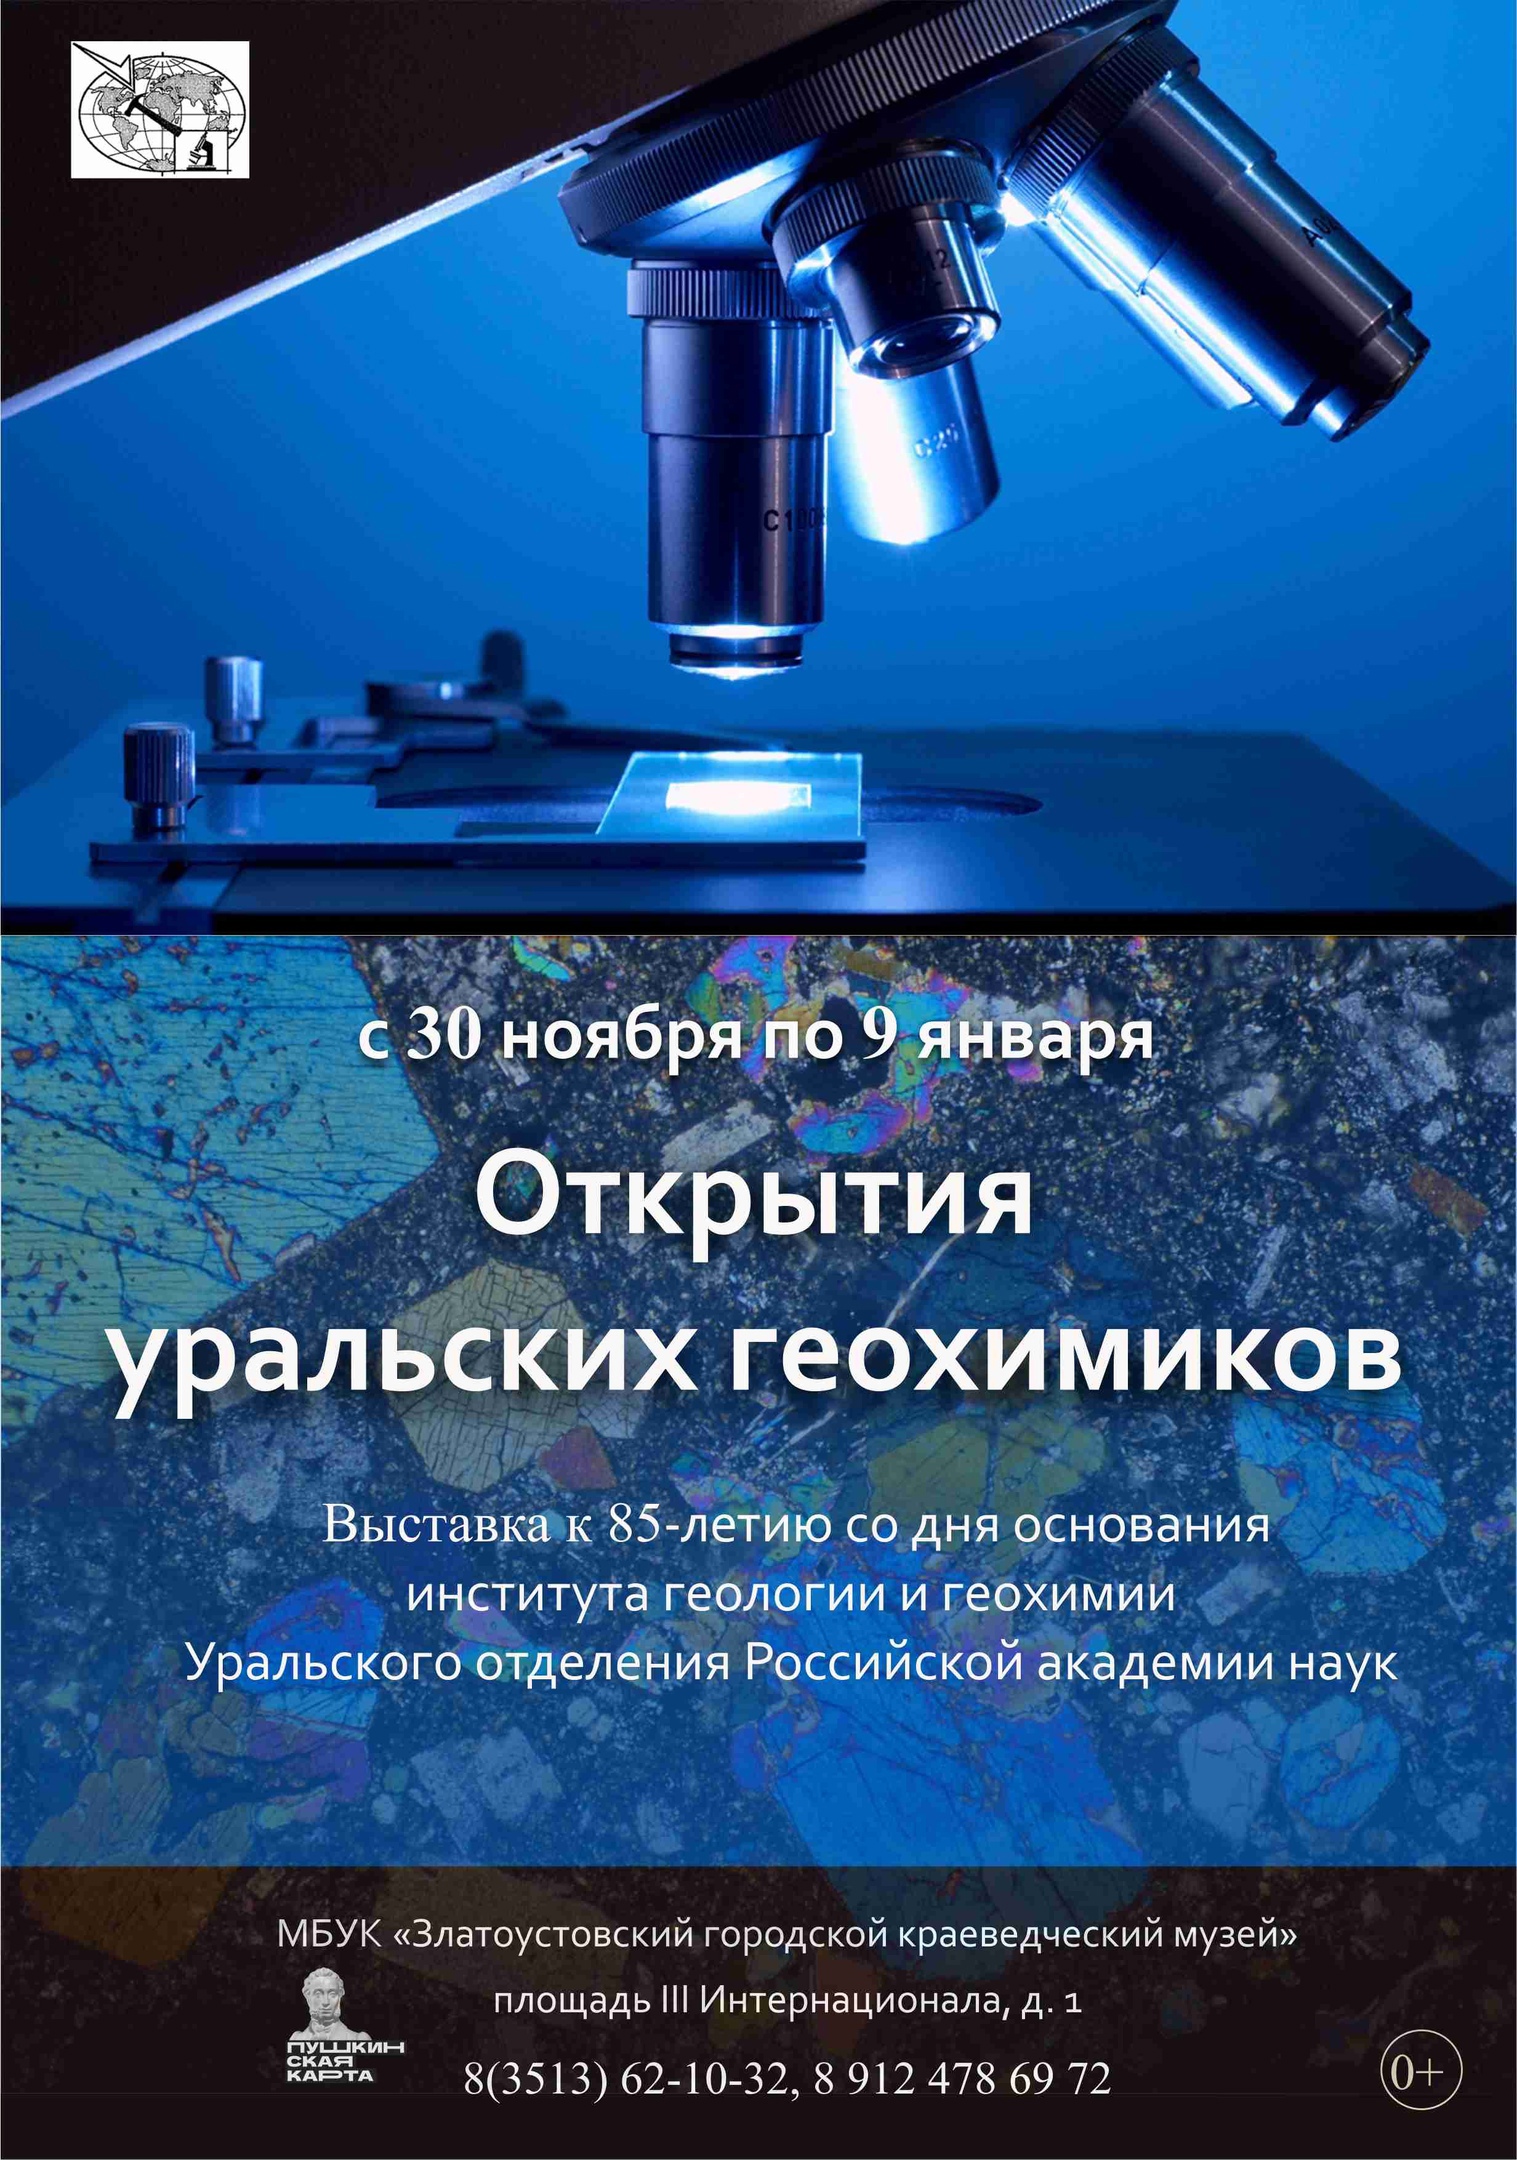 Выставка "Открытия уральских геохимиков"